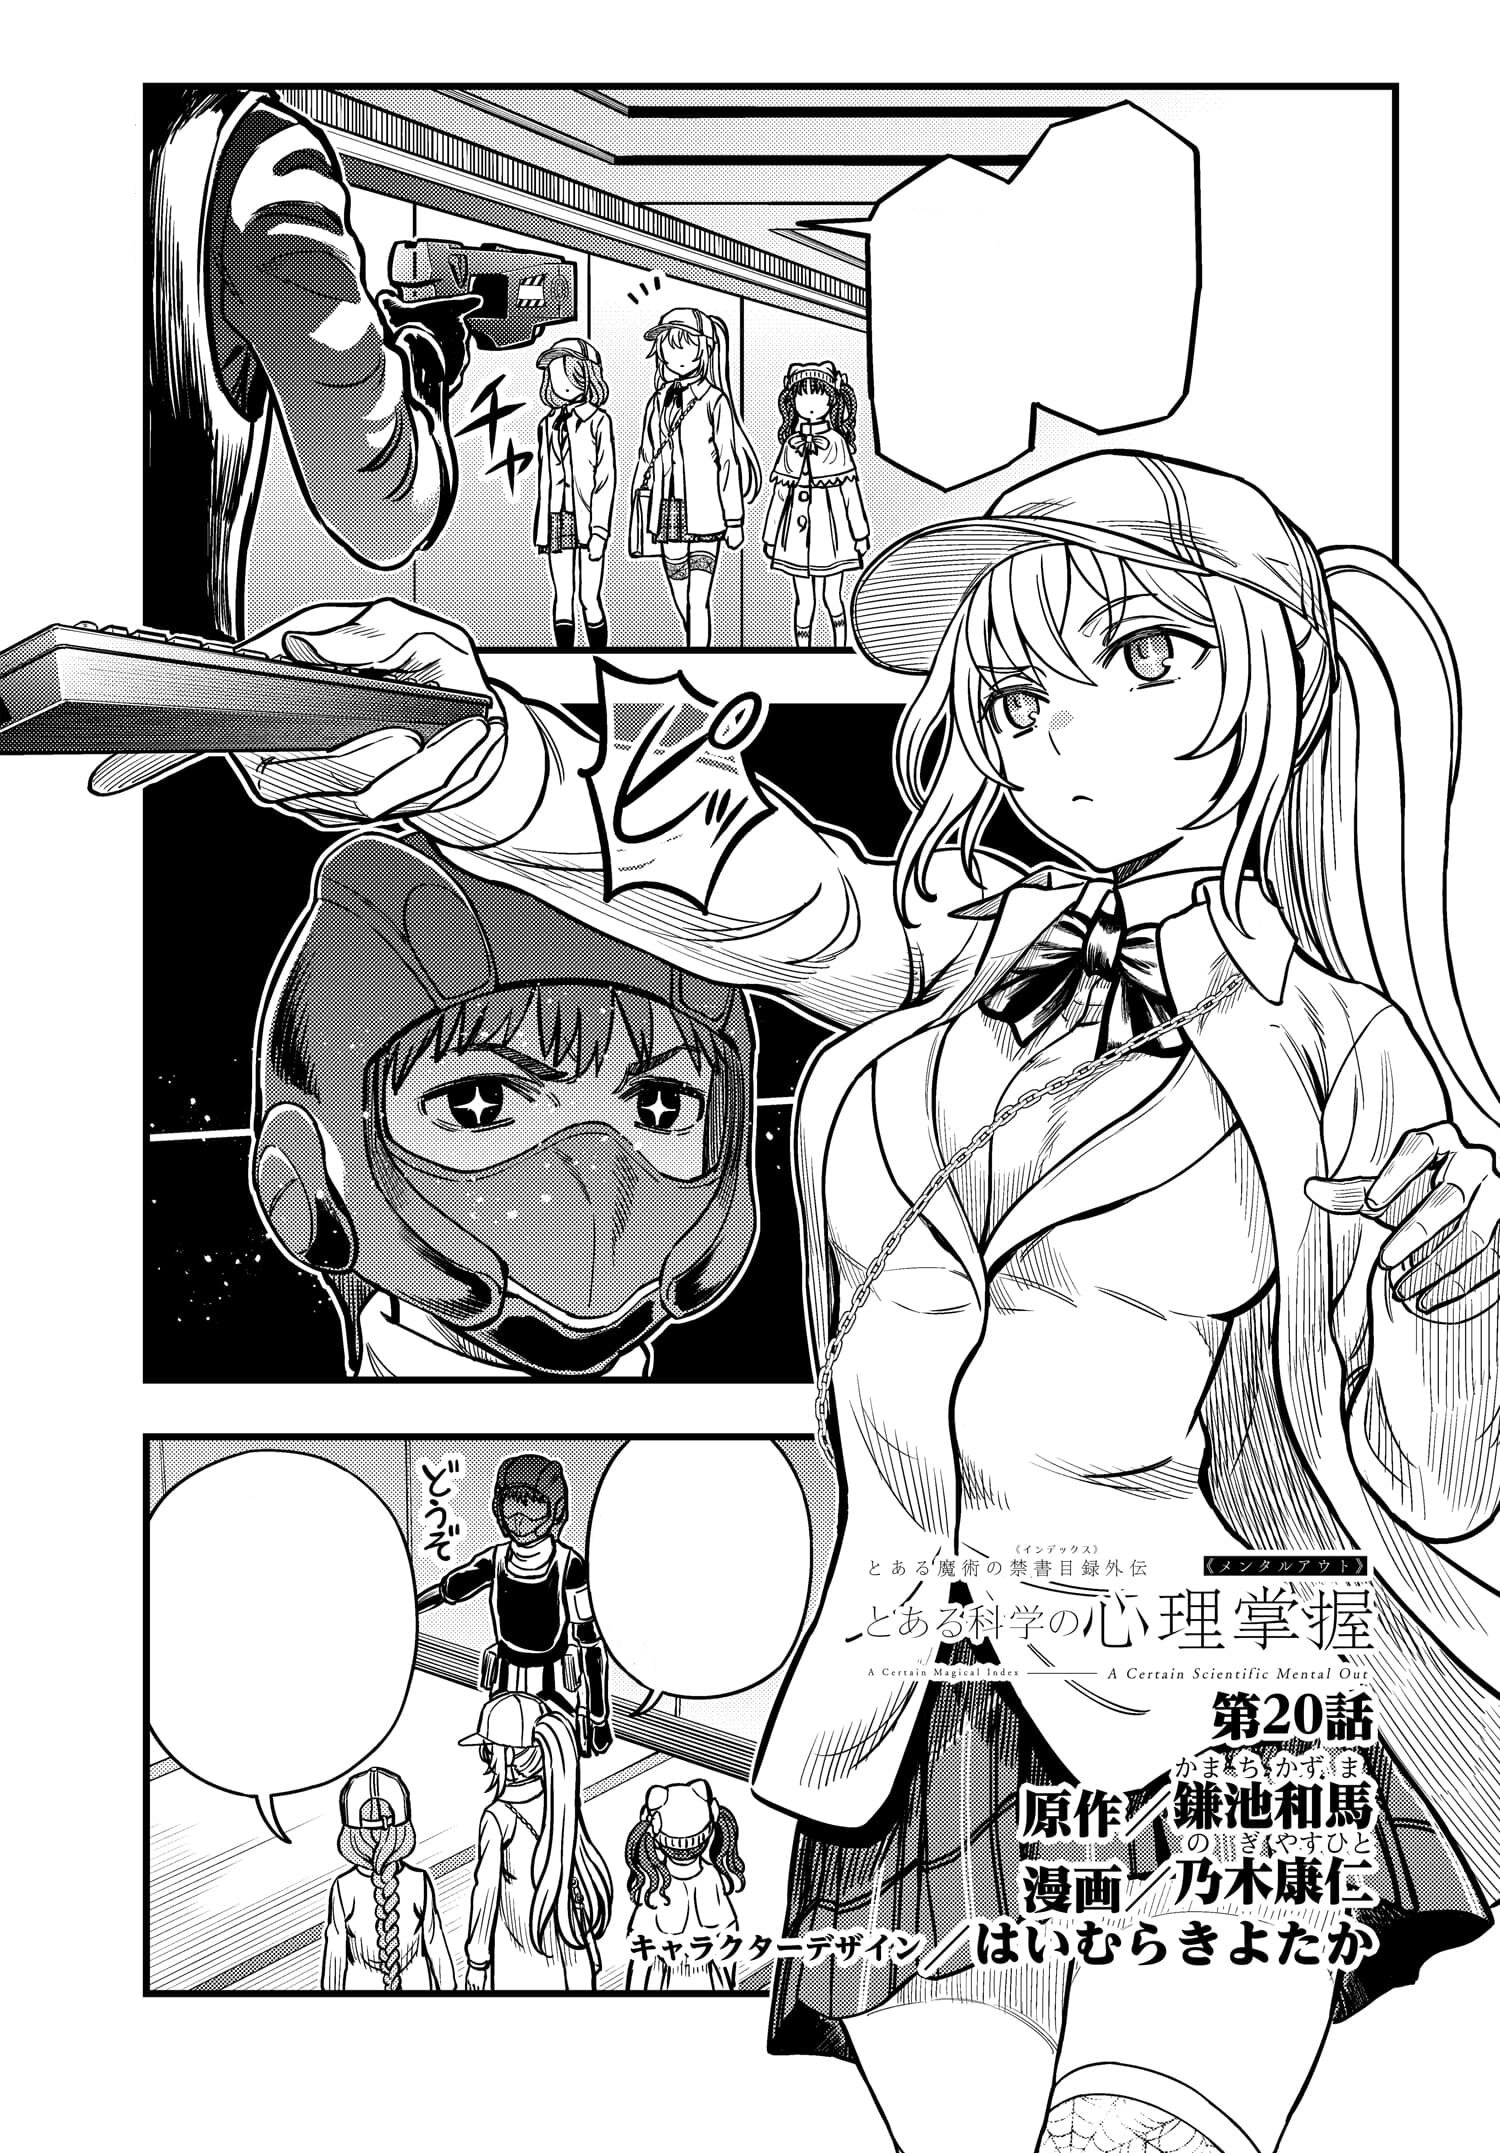 Toaru Kagaku no Accelerator Manga Chapter 020, Toaru Majutsu no Index Wiki